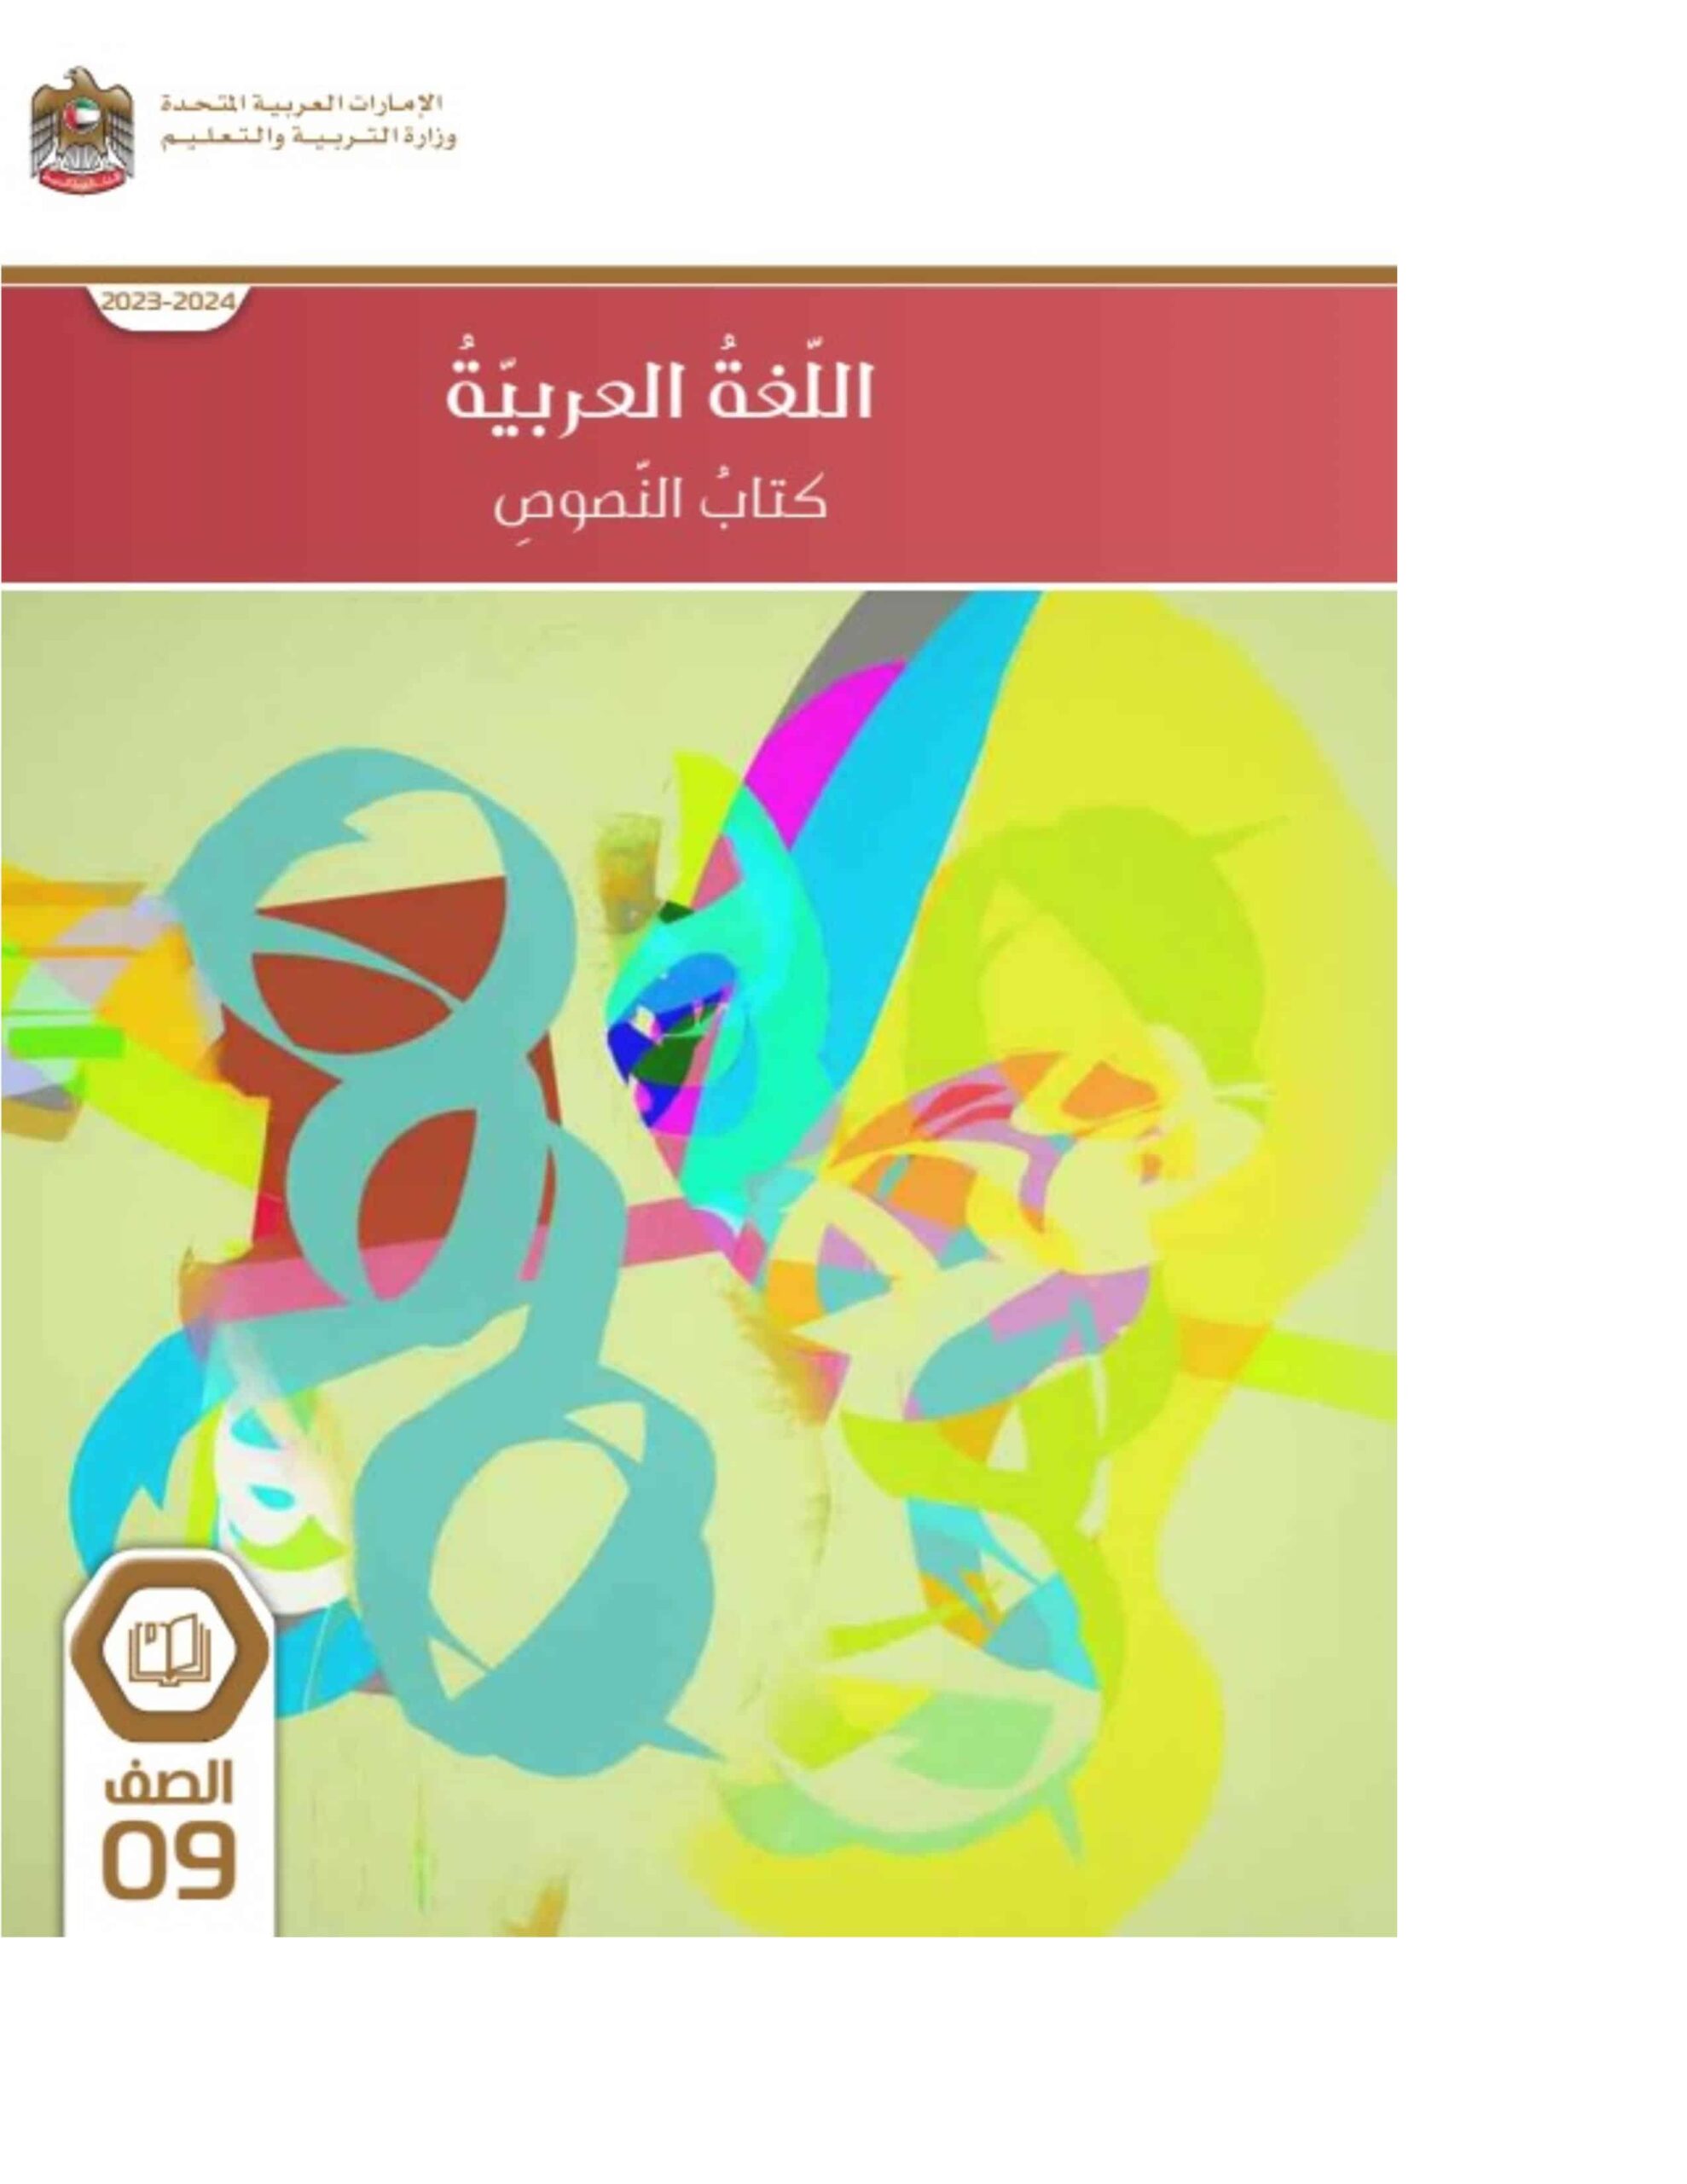 كتاب النصوص اللغة العربية الصف التاسع الفصل الدراسي الأول 2023-2024 نسخة مصورة